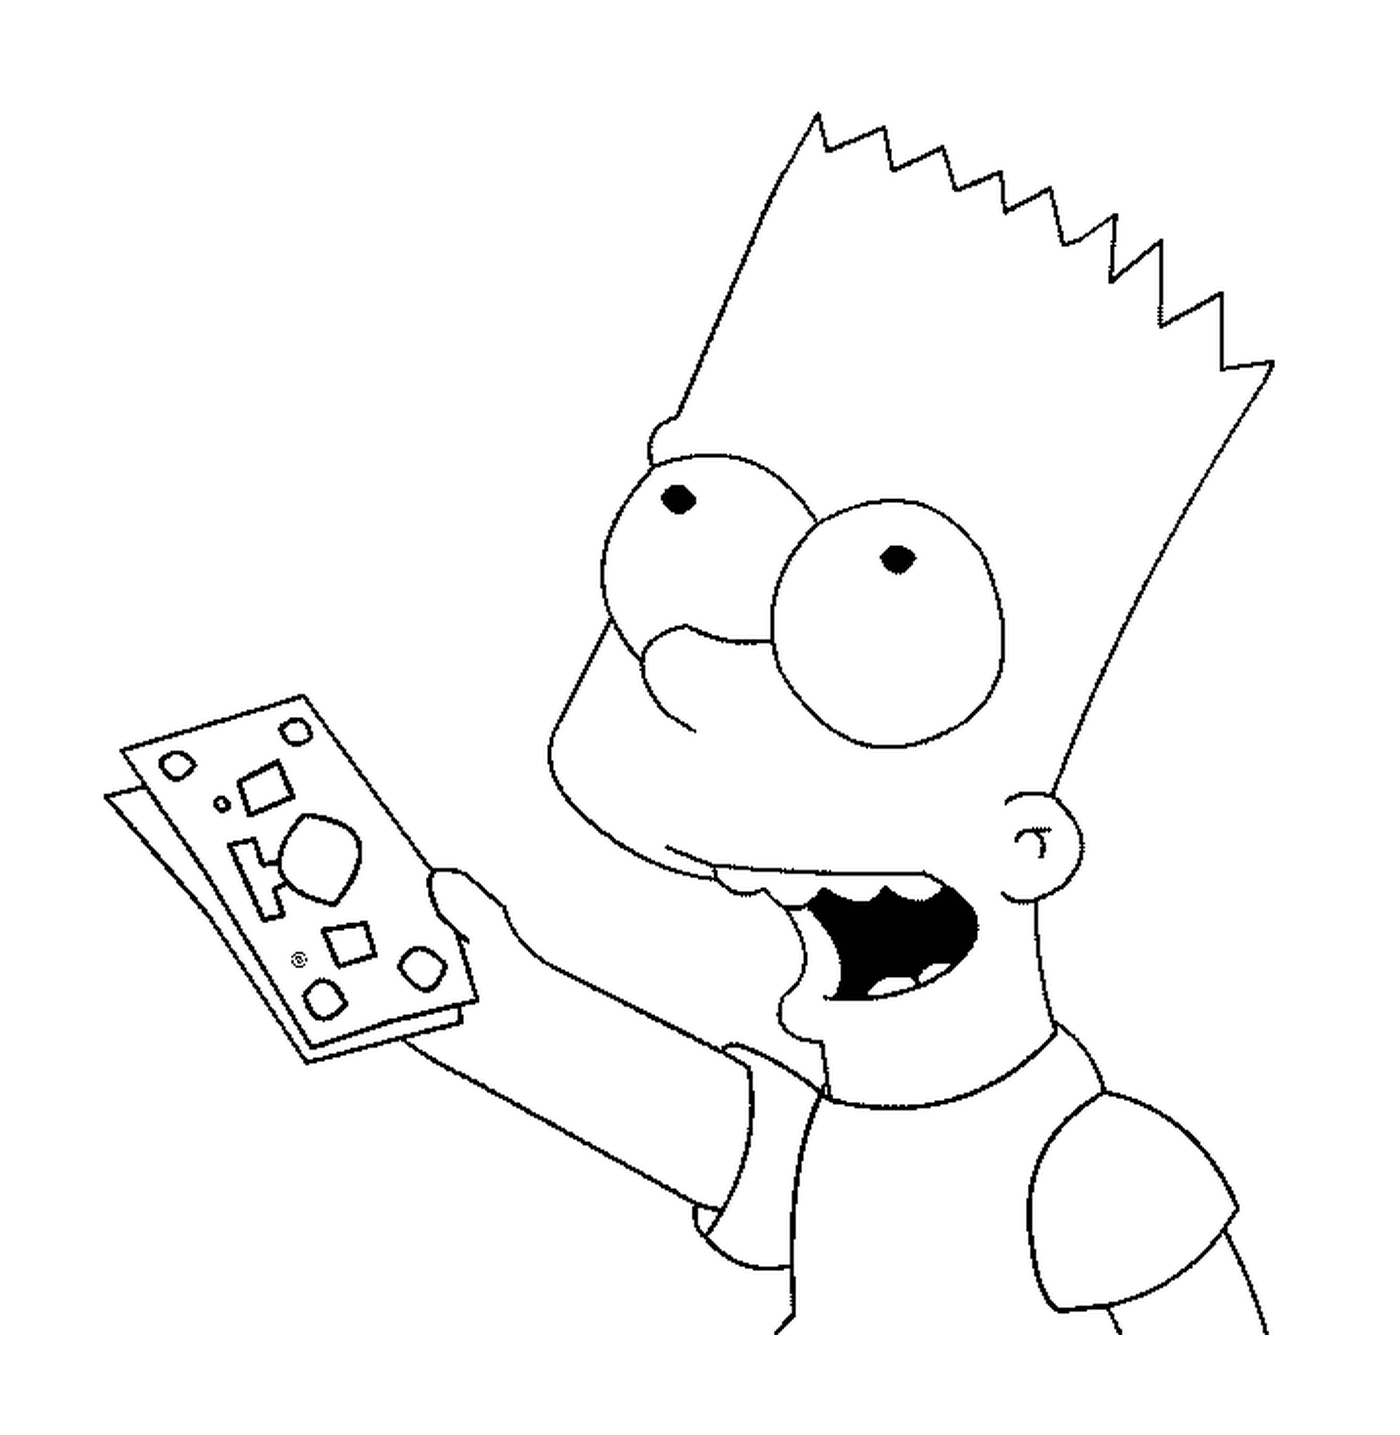  Bart hat Geldscheine 